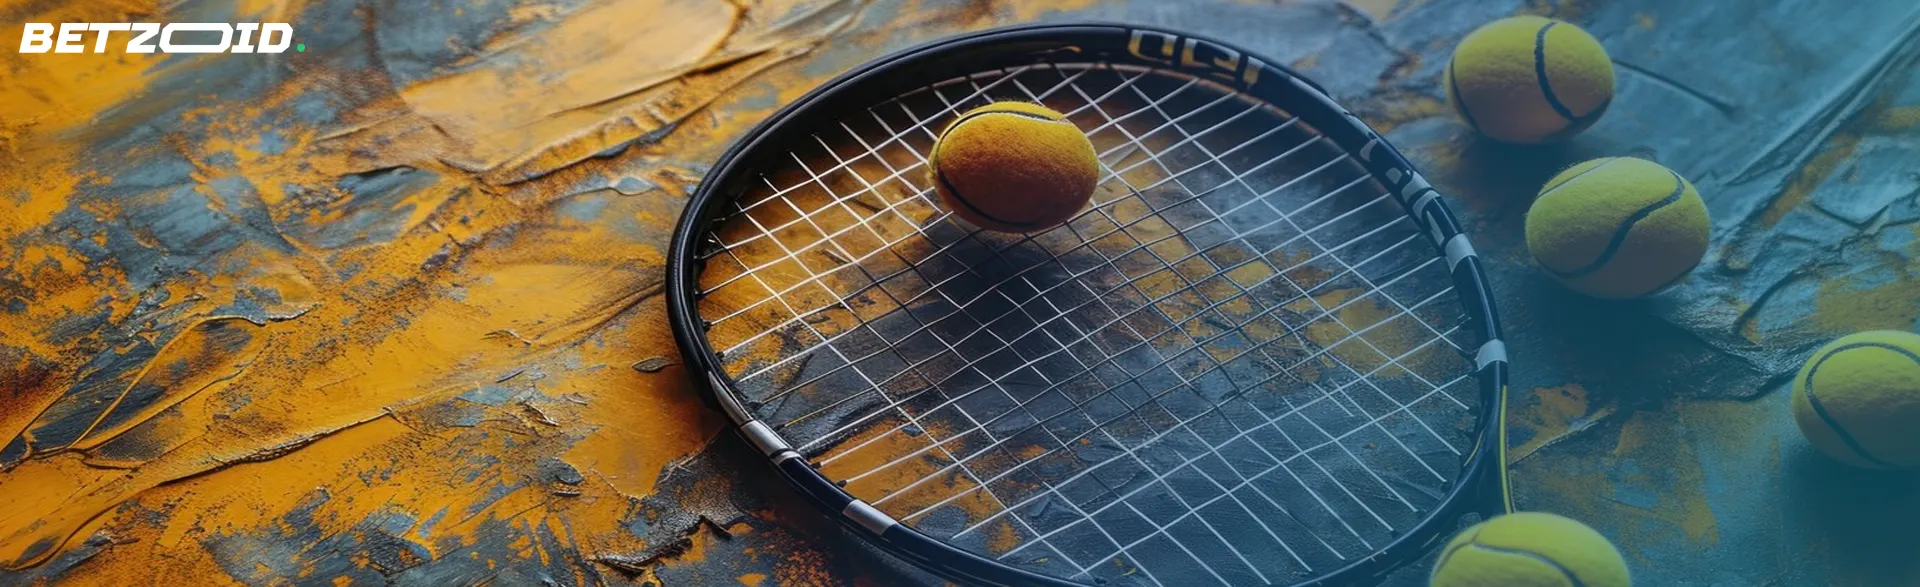 Raqueta y pelotas de tenis en la superficie, en las casas de apuestas con las mejores cuotas.